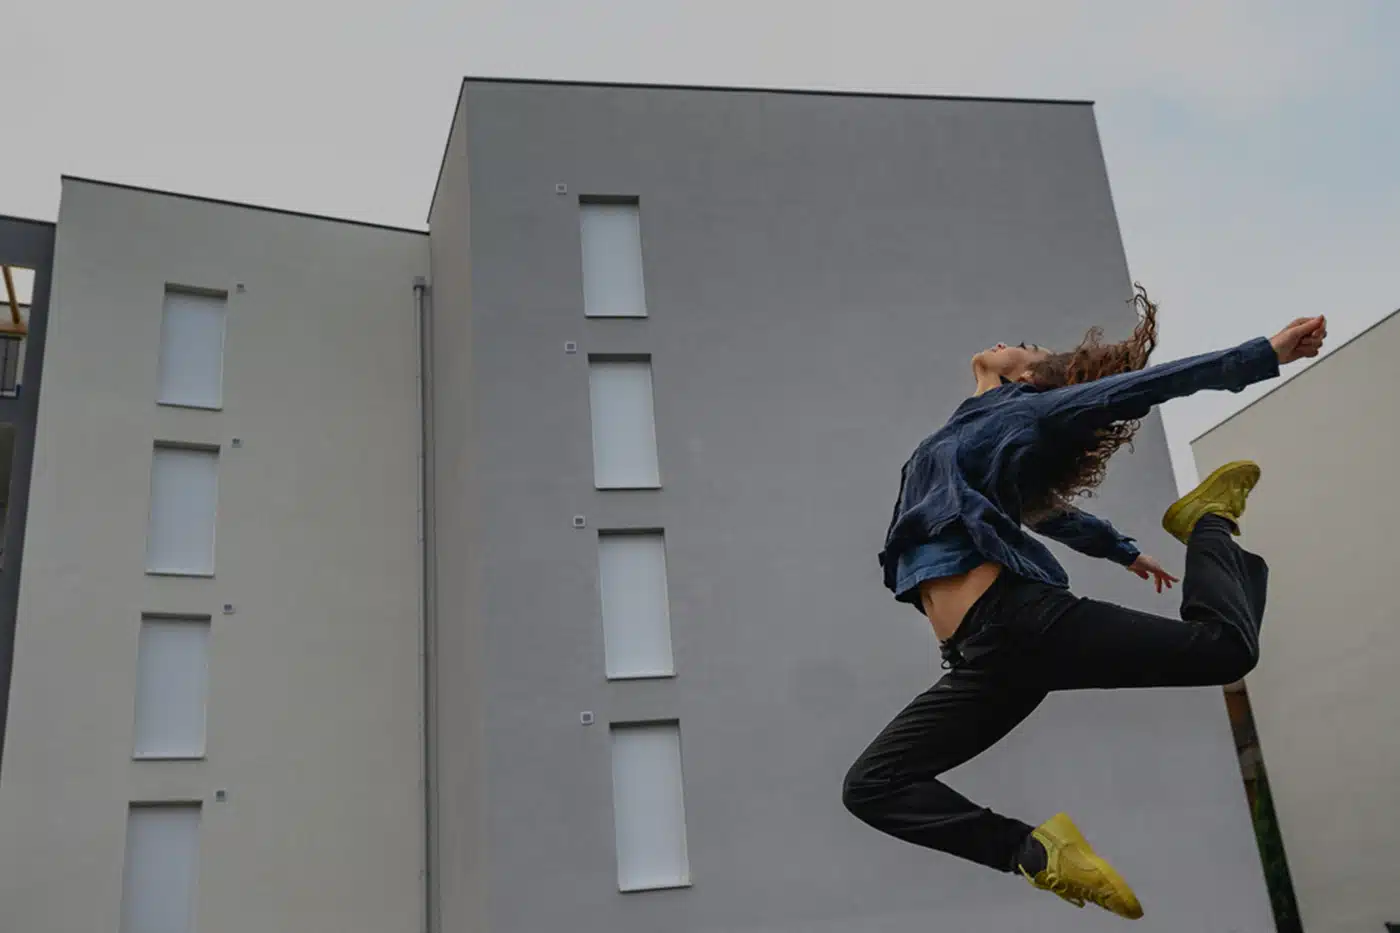 Visuel d’une danseuse se trouvant devant un immeuble de 20 logements collectifs, par Konex ingénierie, pour le projet Cosy.